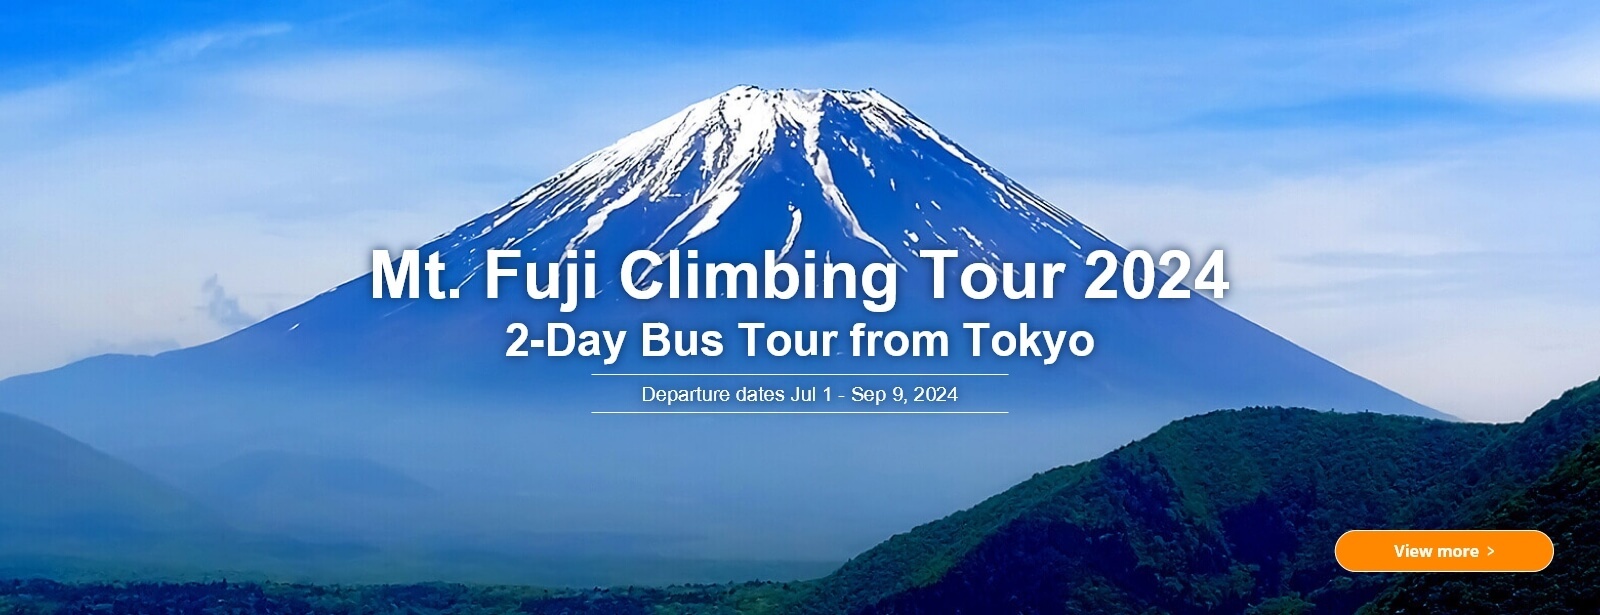 Mt. Fuji Climbing Tour 2024